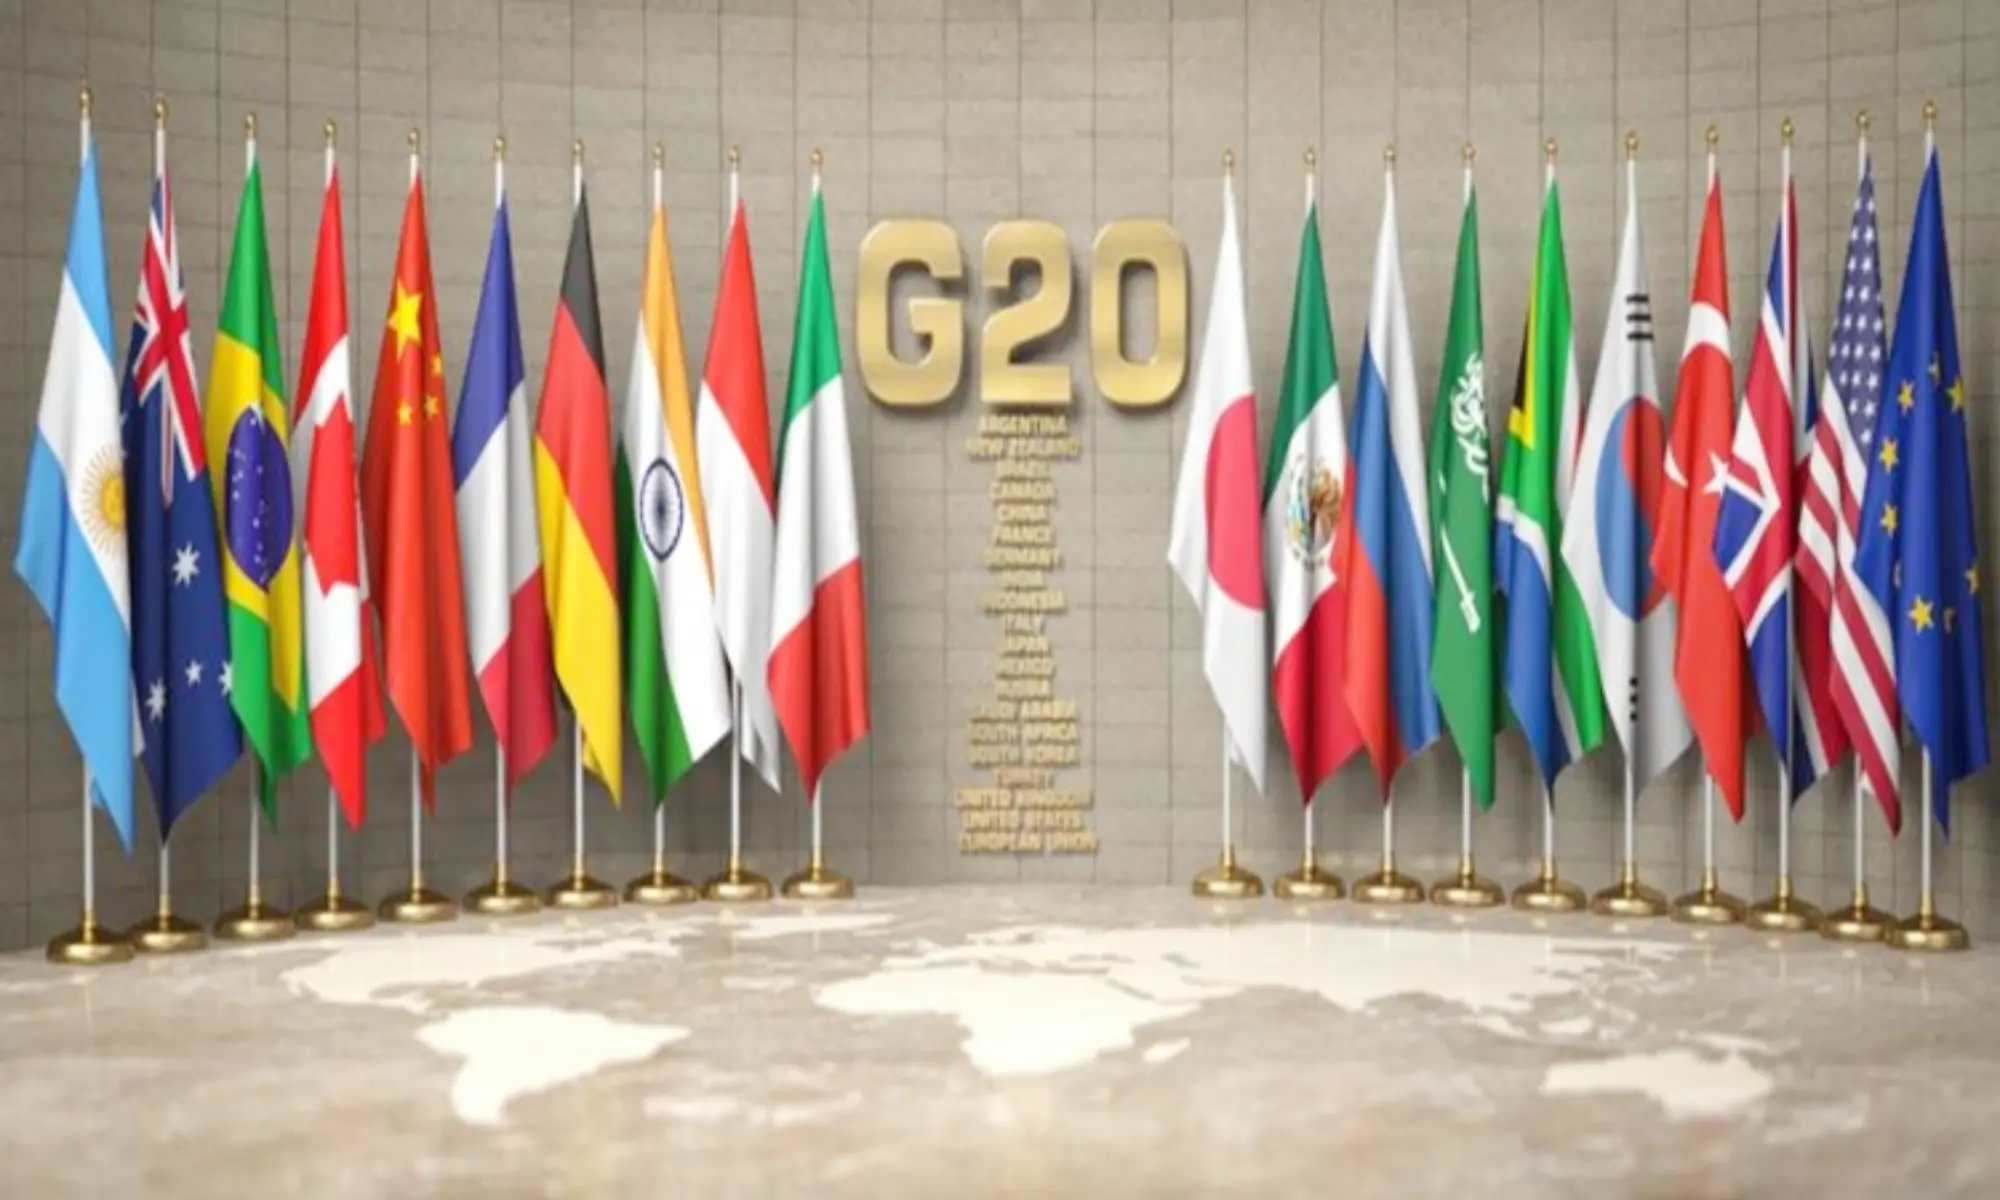 About g20 summit 2023 / G20 शिखर सम्मेलन 2023 क्या है?